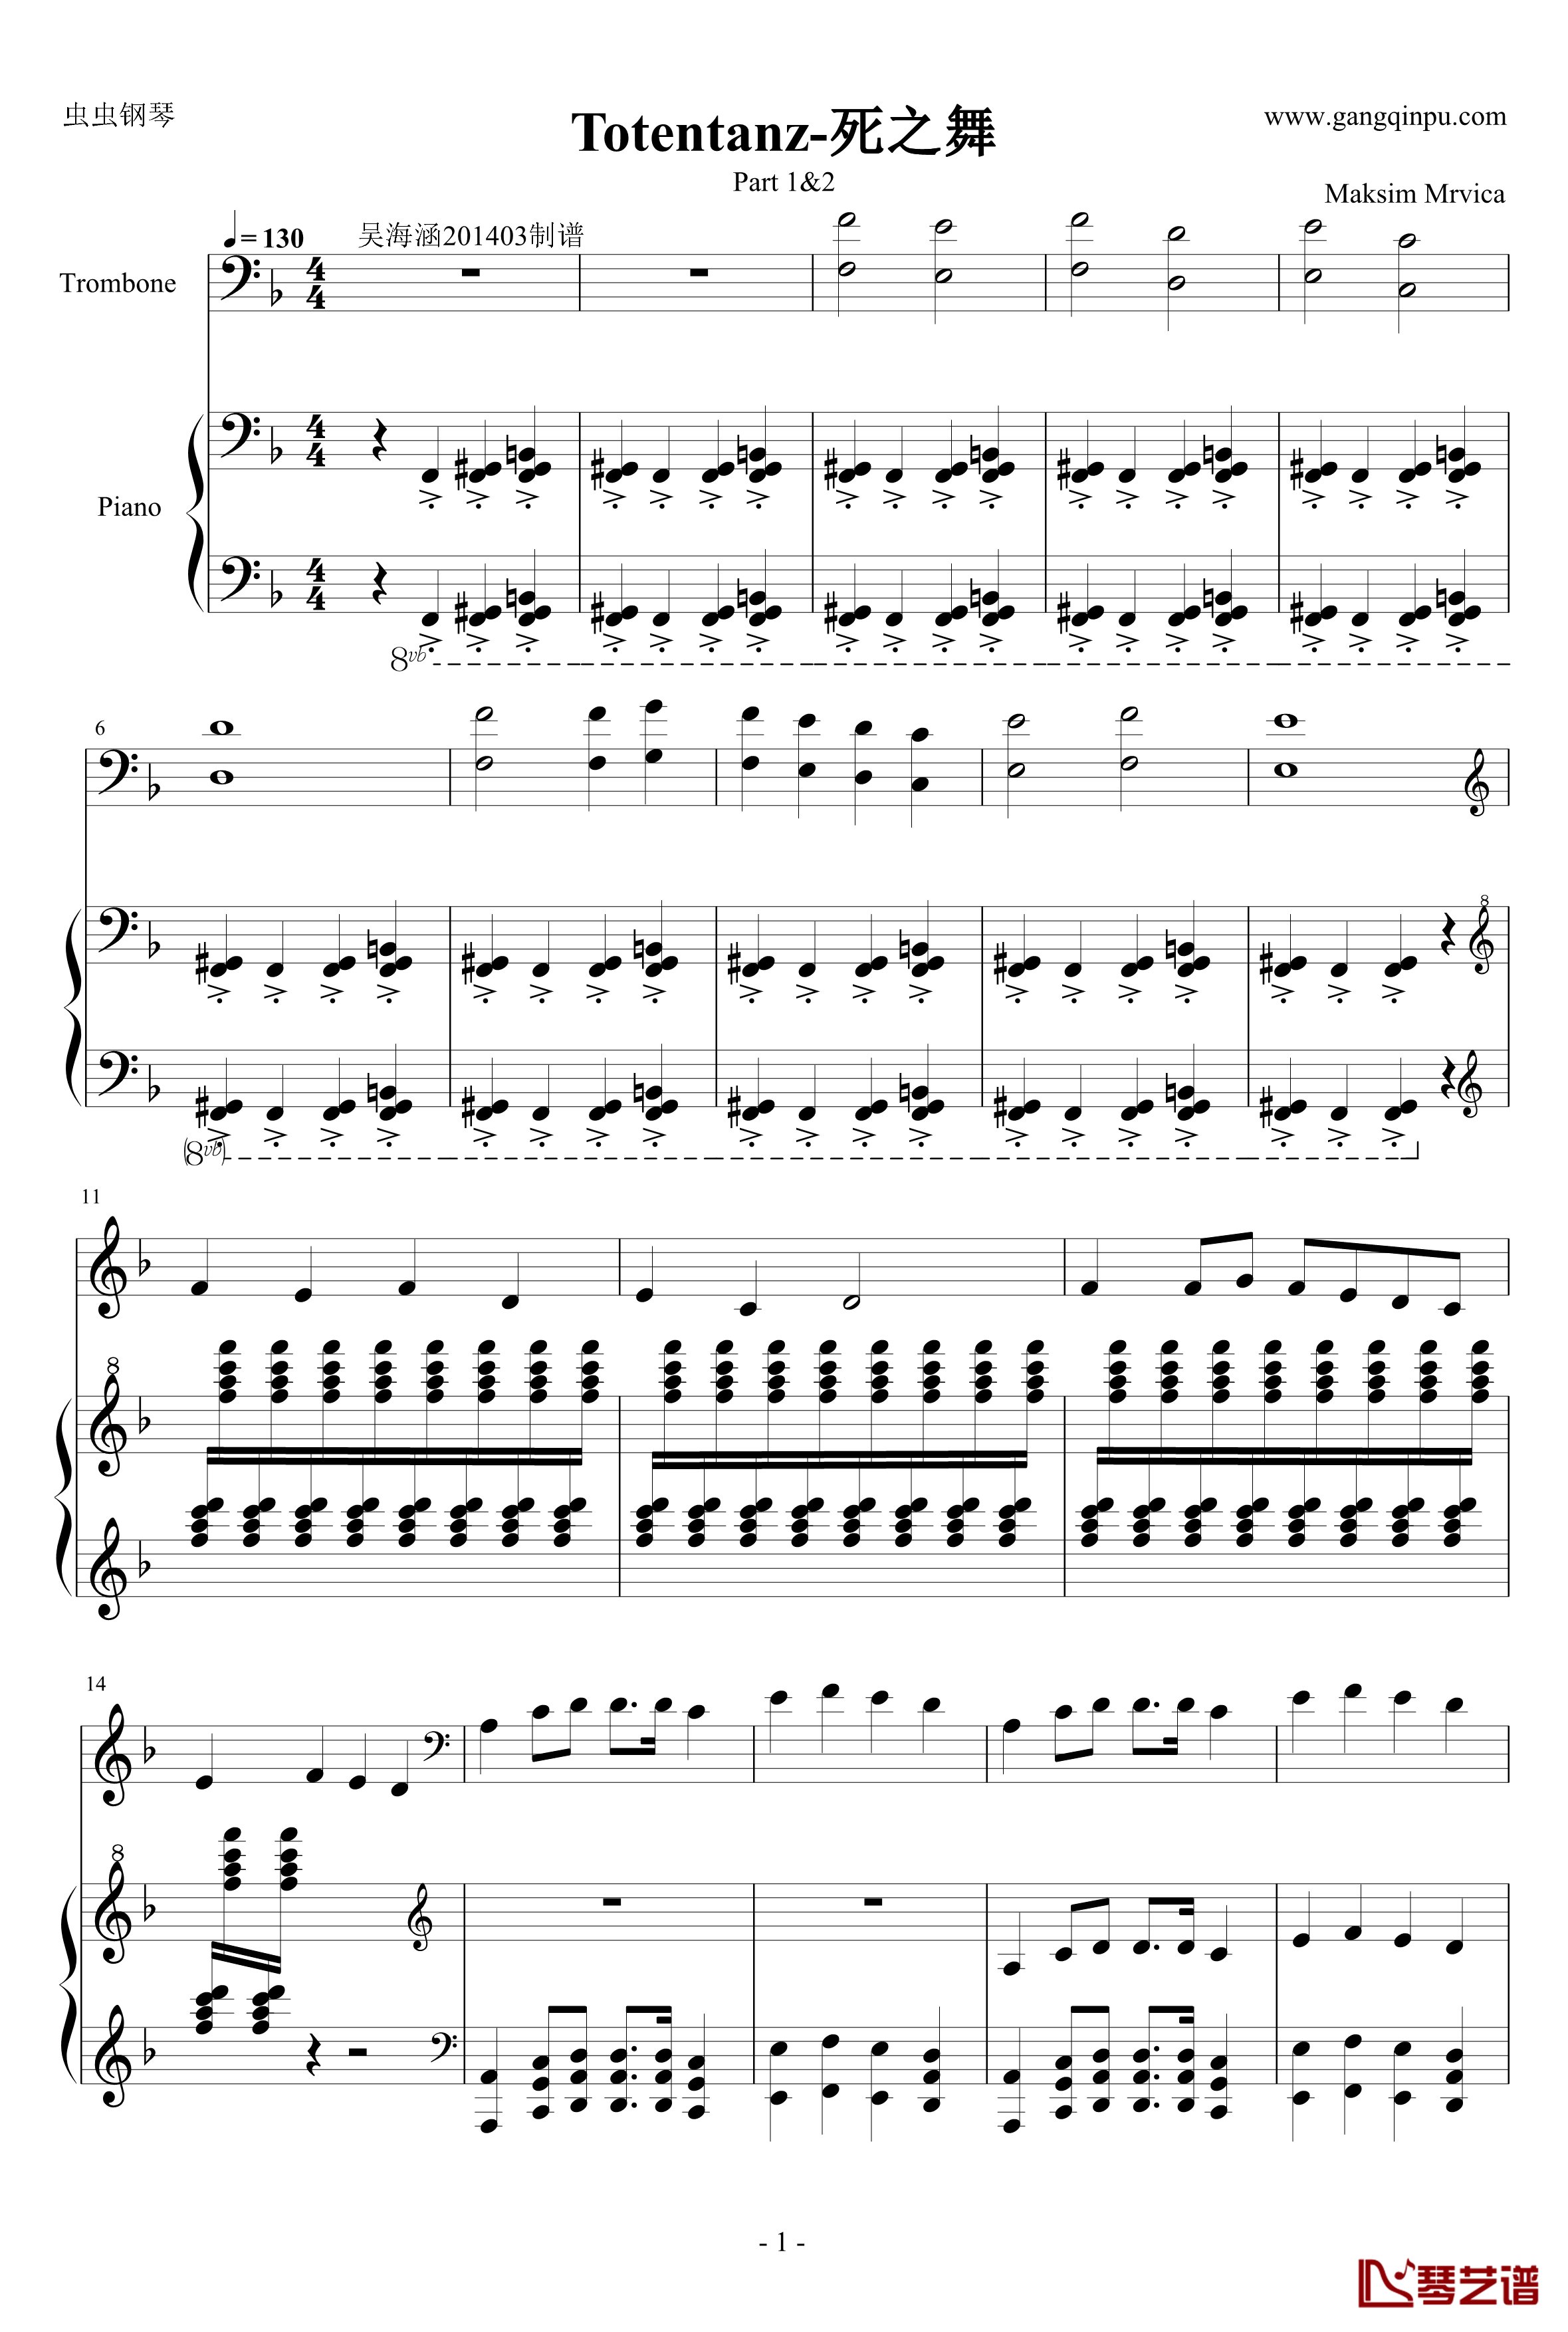 死之舞钢琴谱-Totentanz-马克西姆maksim-钢琴+长号-Maksim·Mrvica1